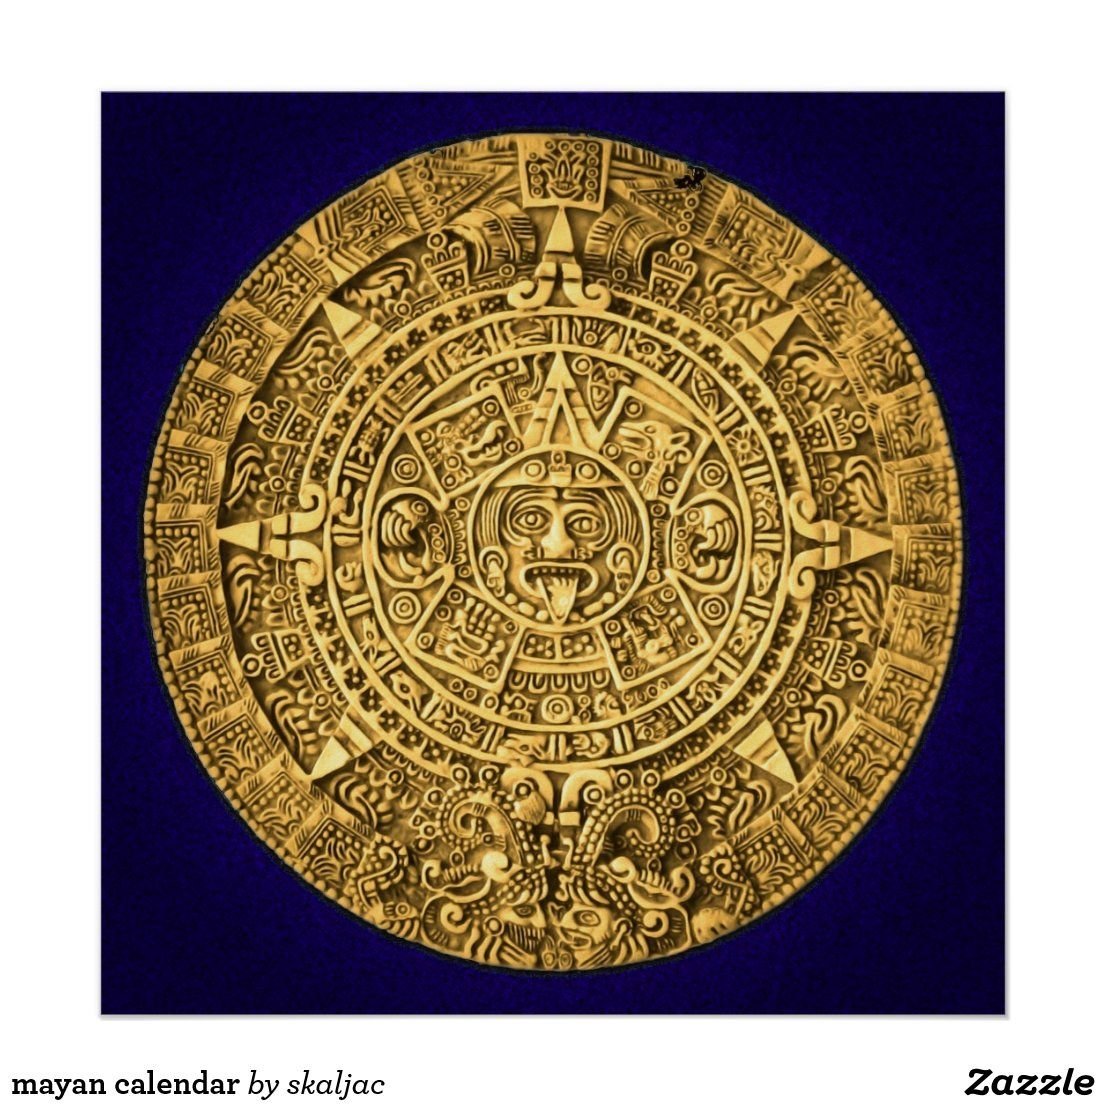 Сюжет и композиция календарь майя. Ацтекский камень солнца. Солнечный календарь Майя. Календарь ацтеков. Солнечный календарь Майя золото.